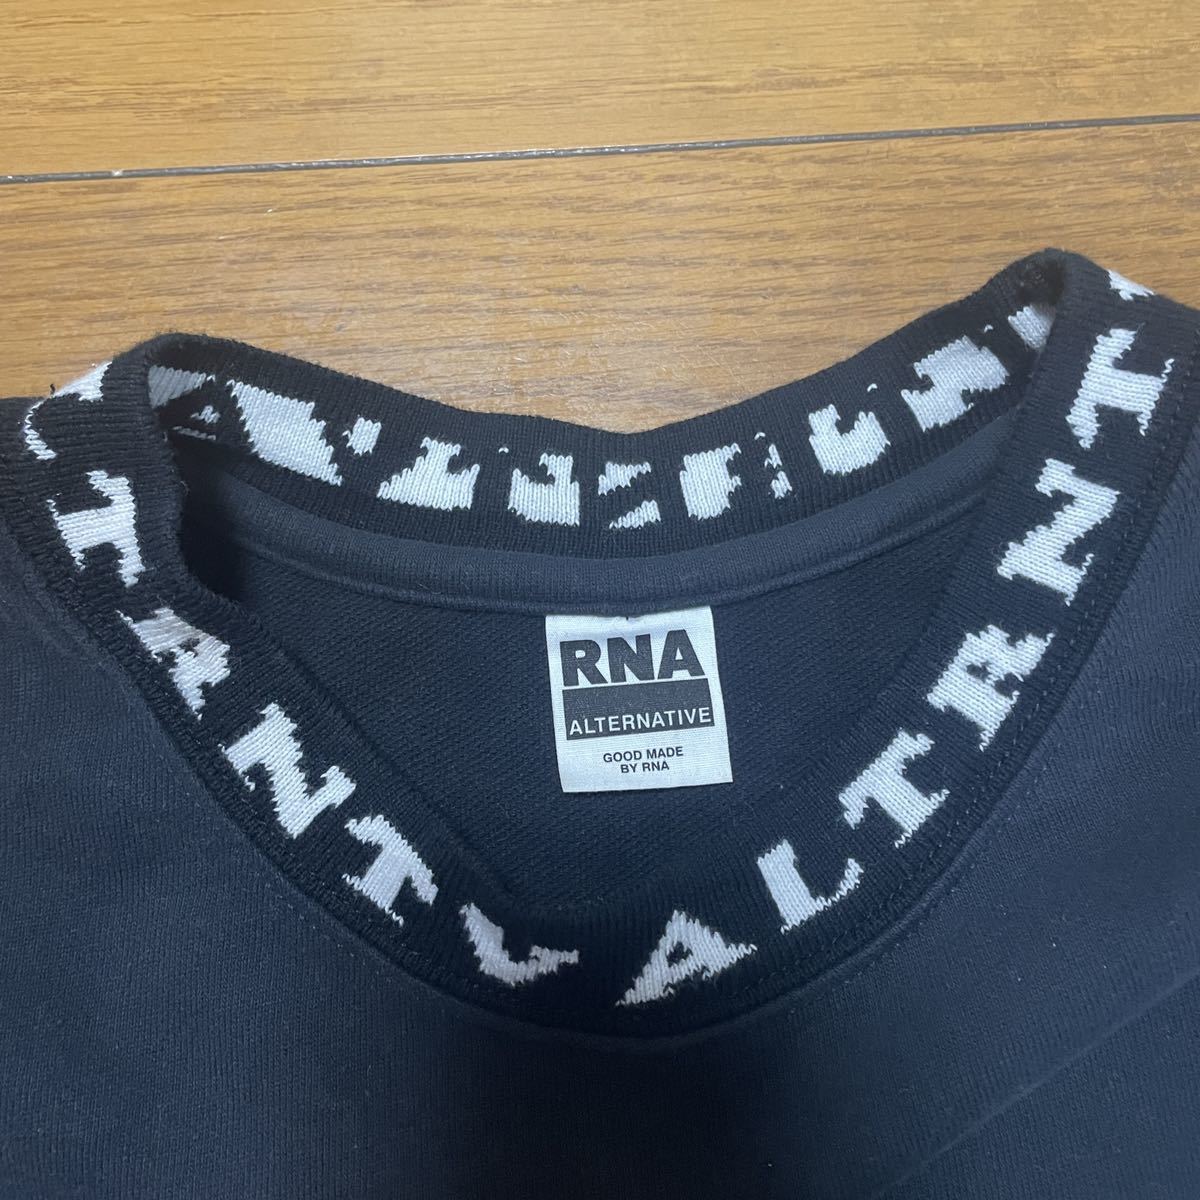 RNAba Rune type Bick Silhouette футболка тренировочный чёрный 